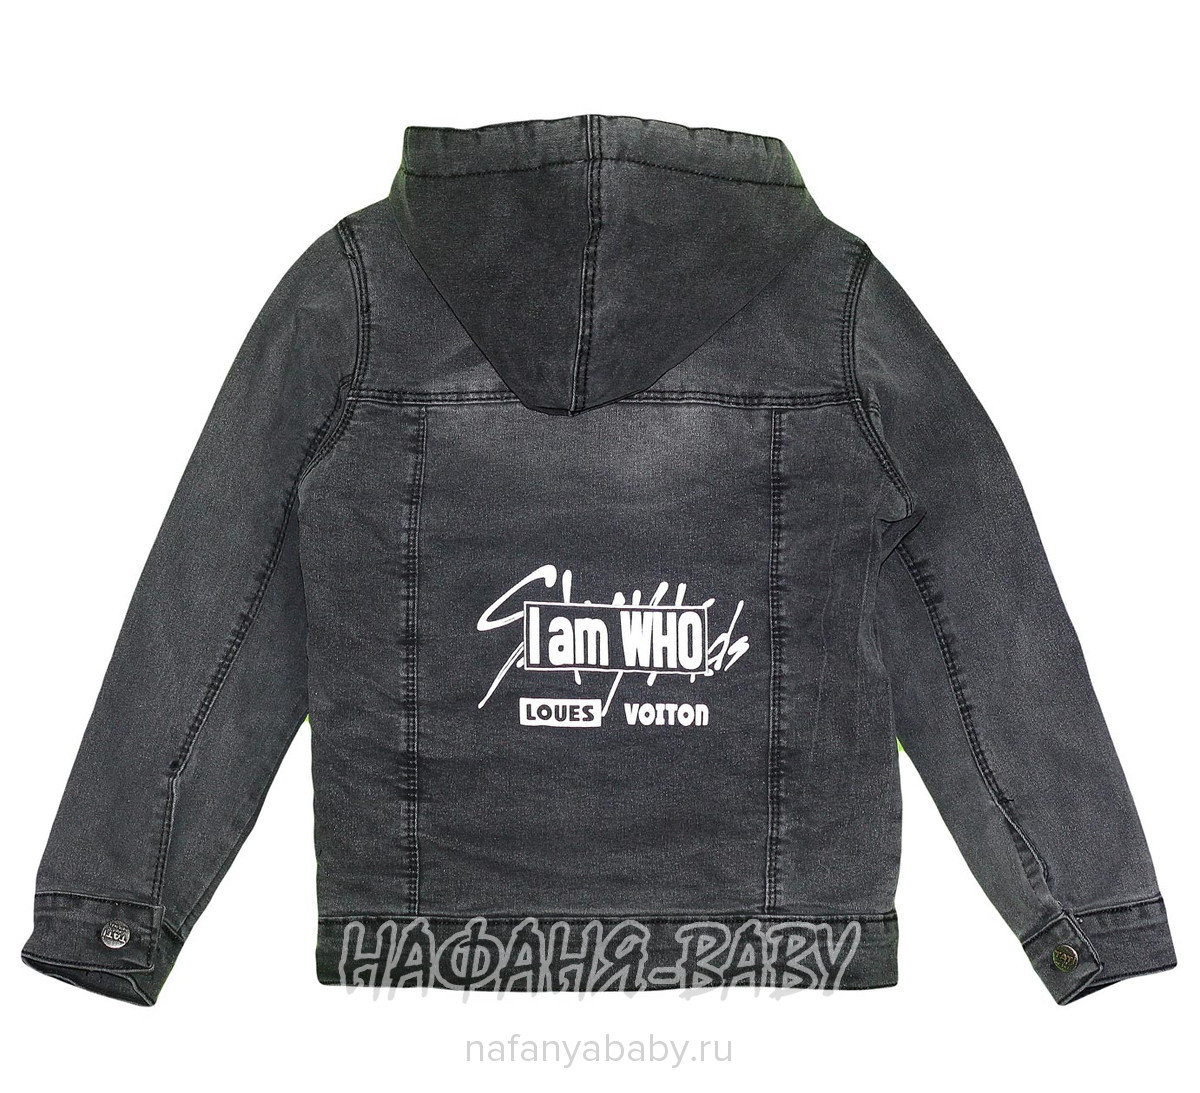 Джинсовая утепленная куртка TATI Jeans арт: 9224, 1-4 года, 5-9 лет, цвет черный, оптом Турция